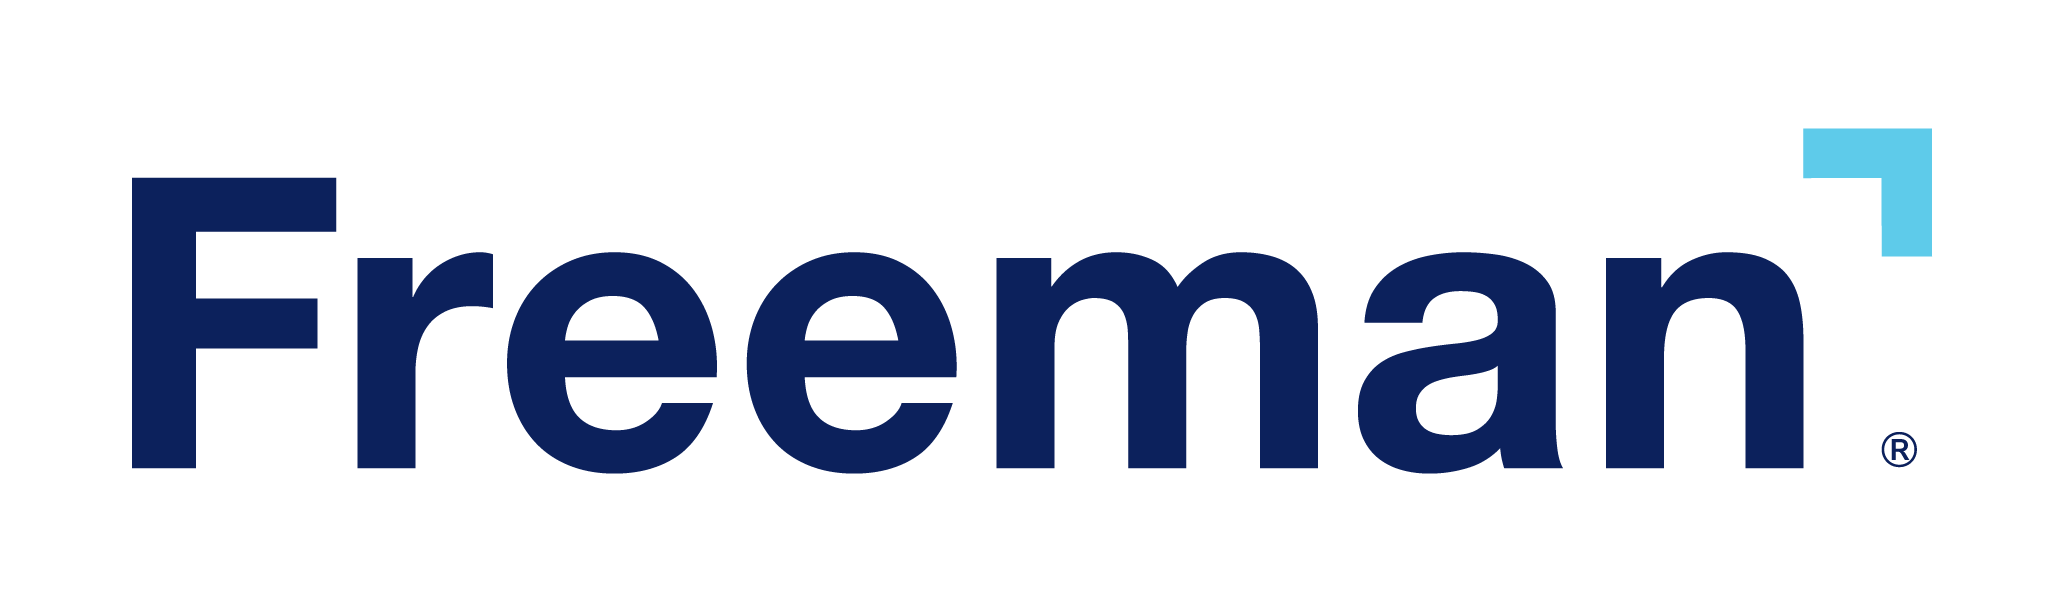 Freeman logo